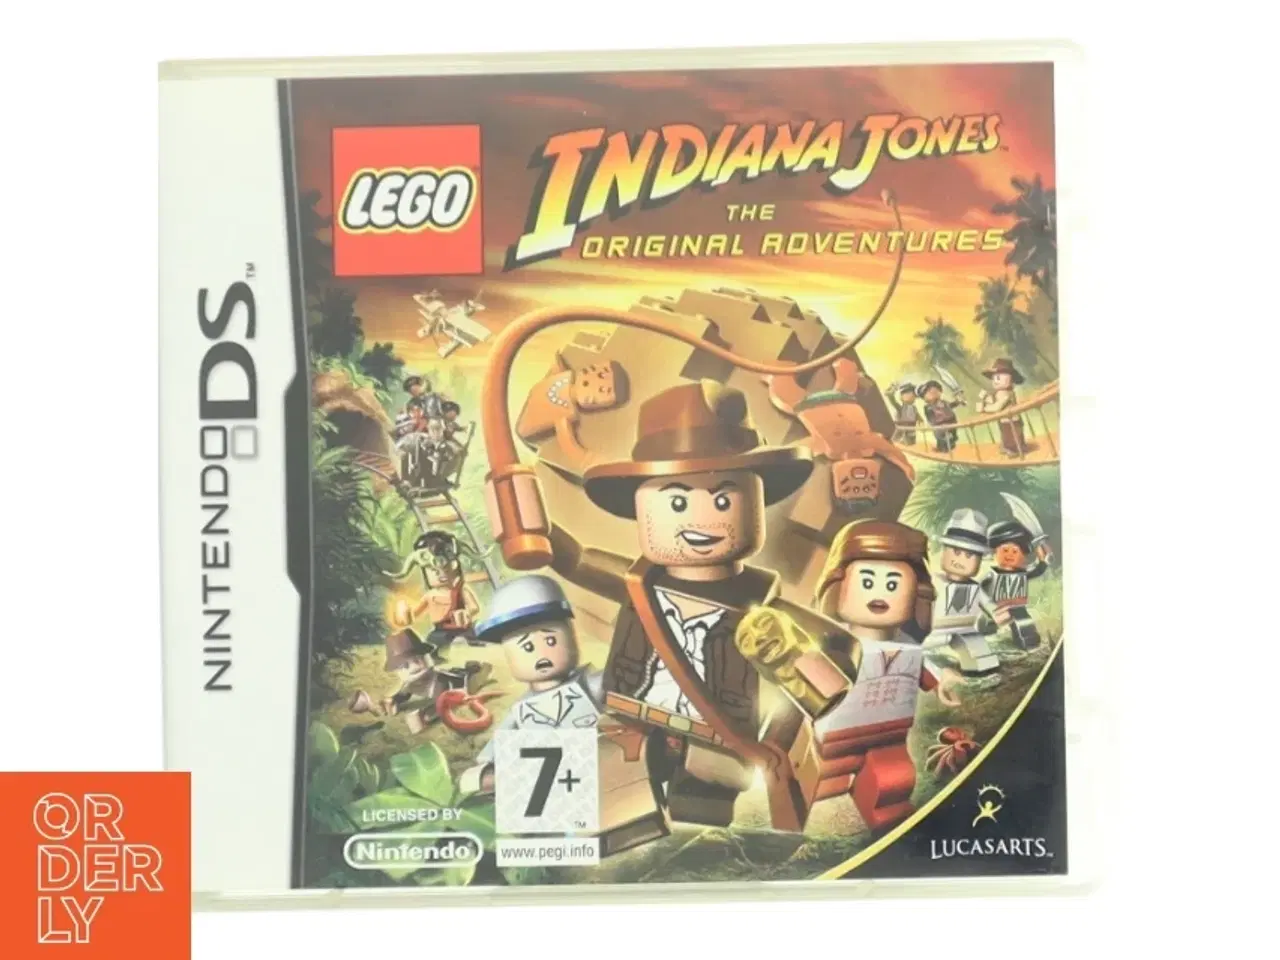 Billede 1 - LEGO Indiana Jones: The Original Adventures Nintendo DS spil fra LEGO, LucasArts